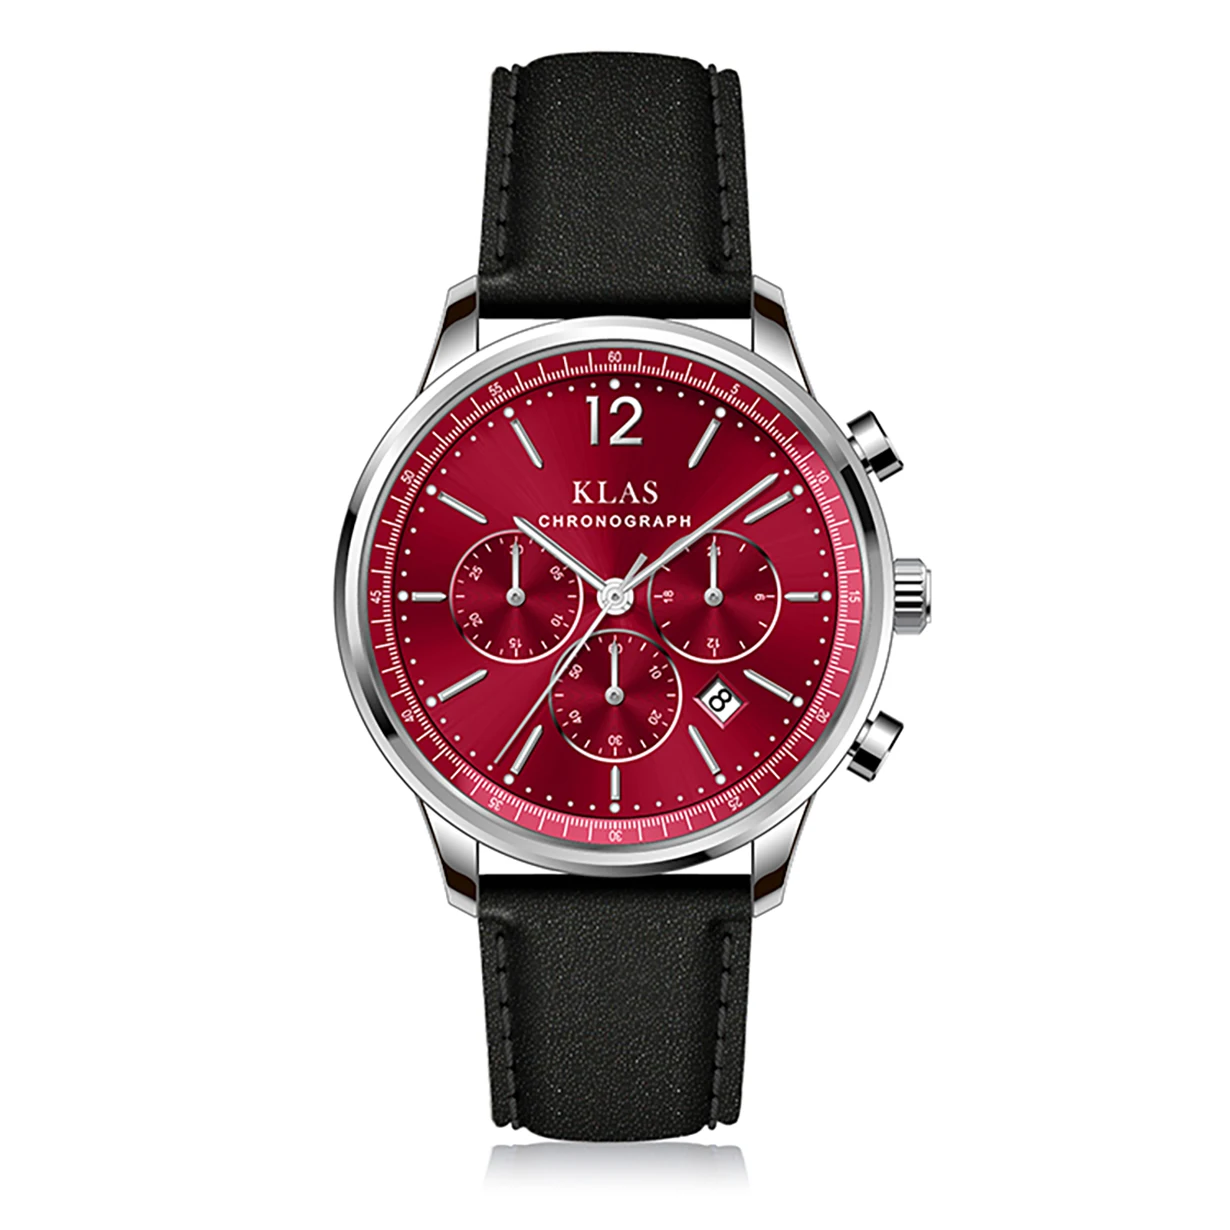 watch relogio masculino Men's waterproof  wristwatch Trend Leather  KLAS Brand